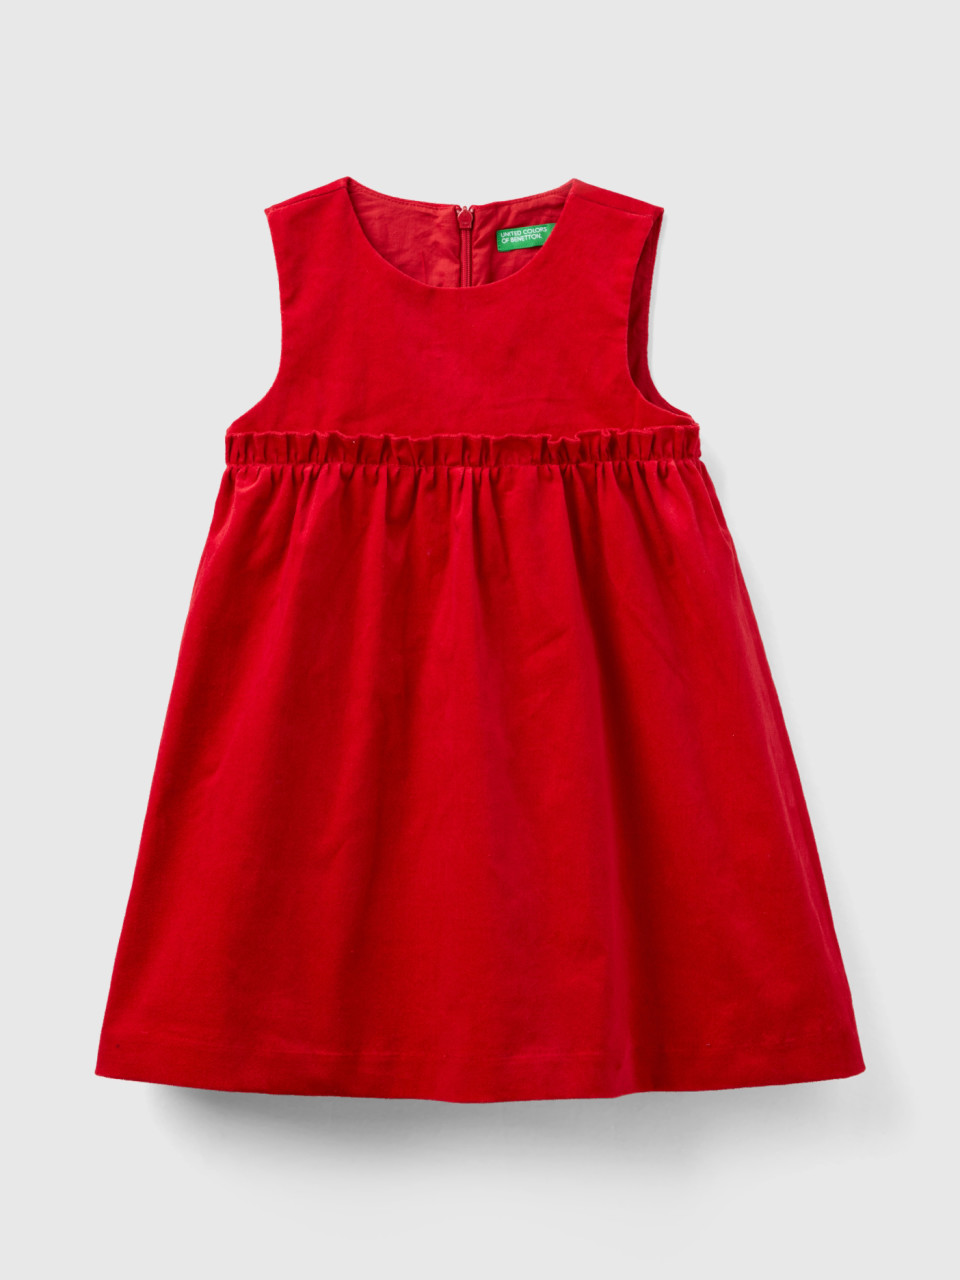 Benetton, Smooth Velvet Dress, Red, Kids